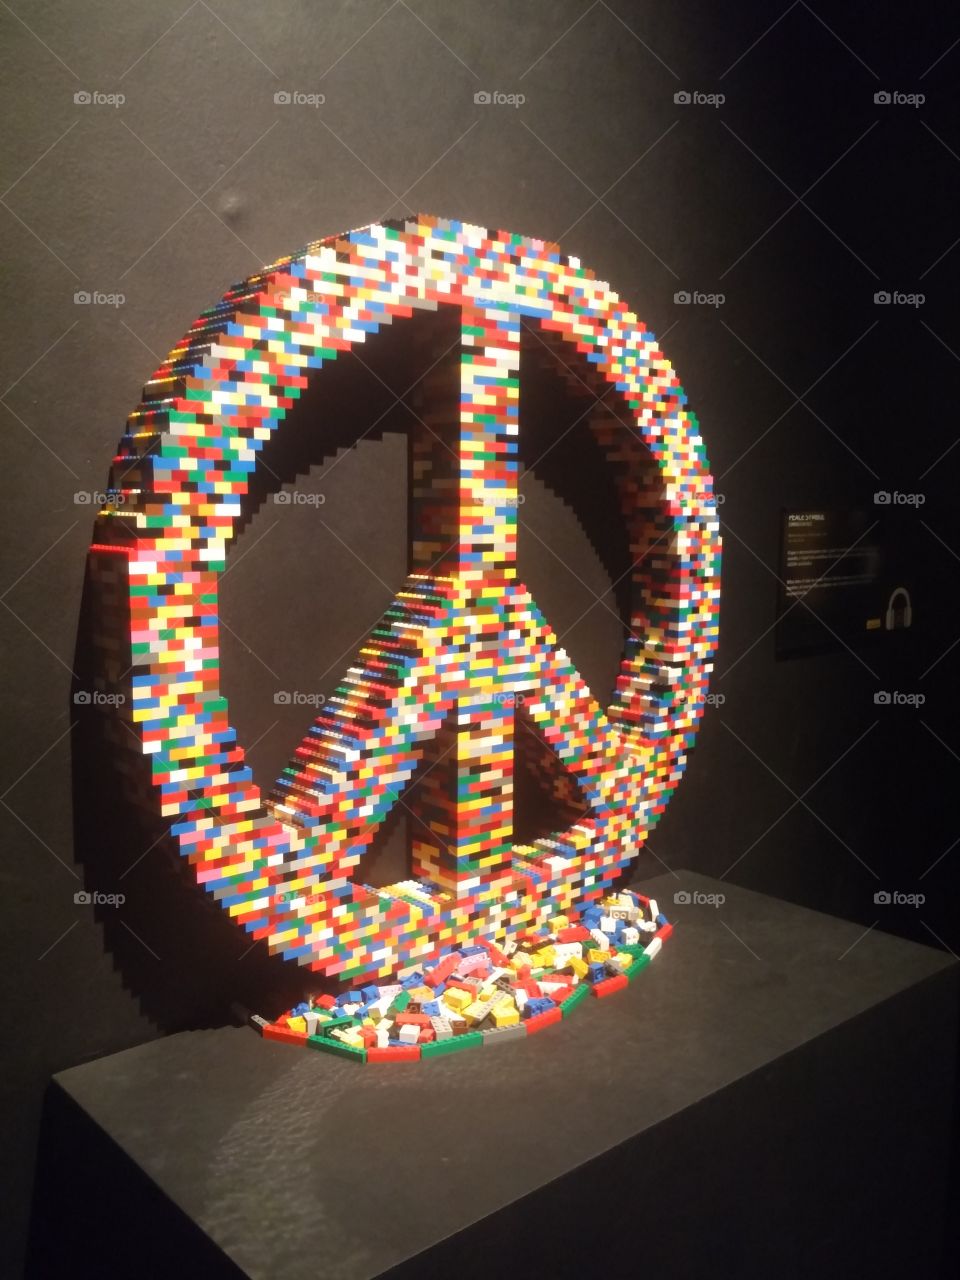 simbolo da paz feito  de peças lego